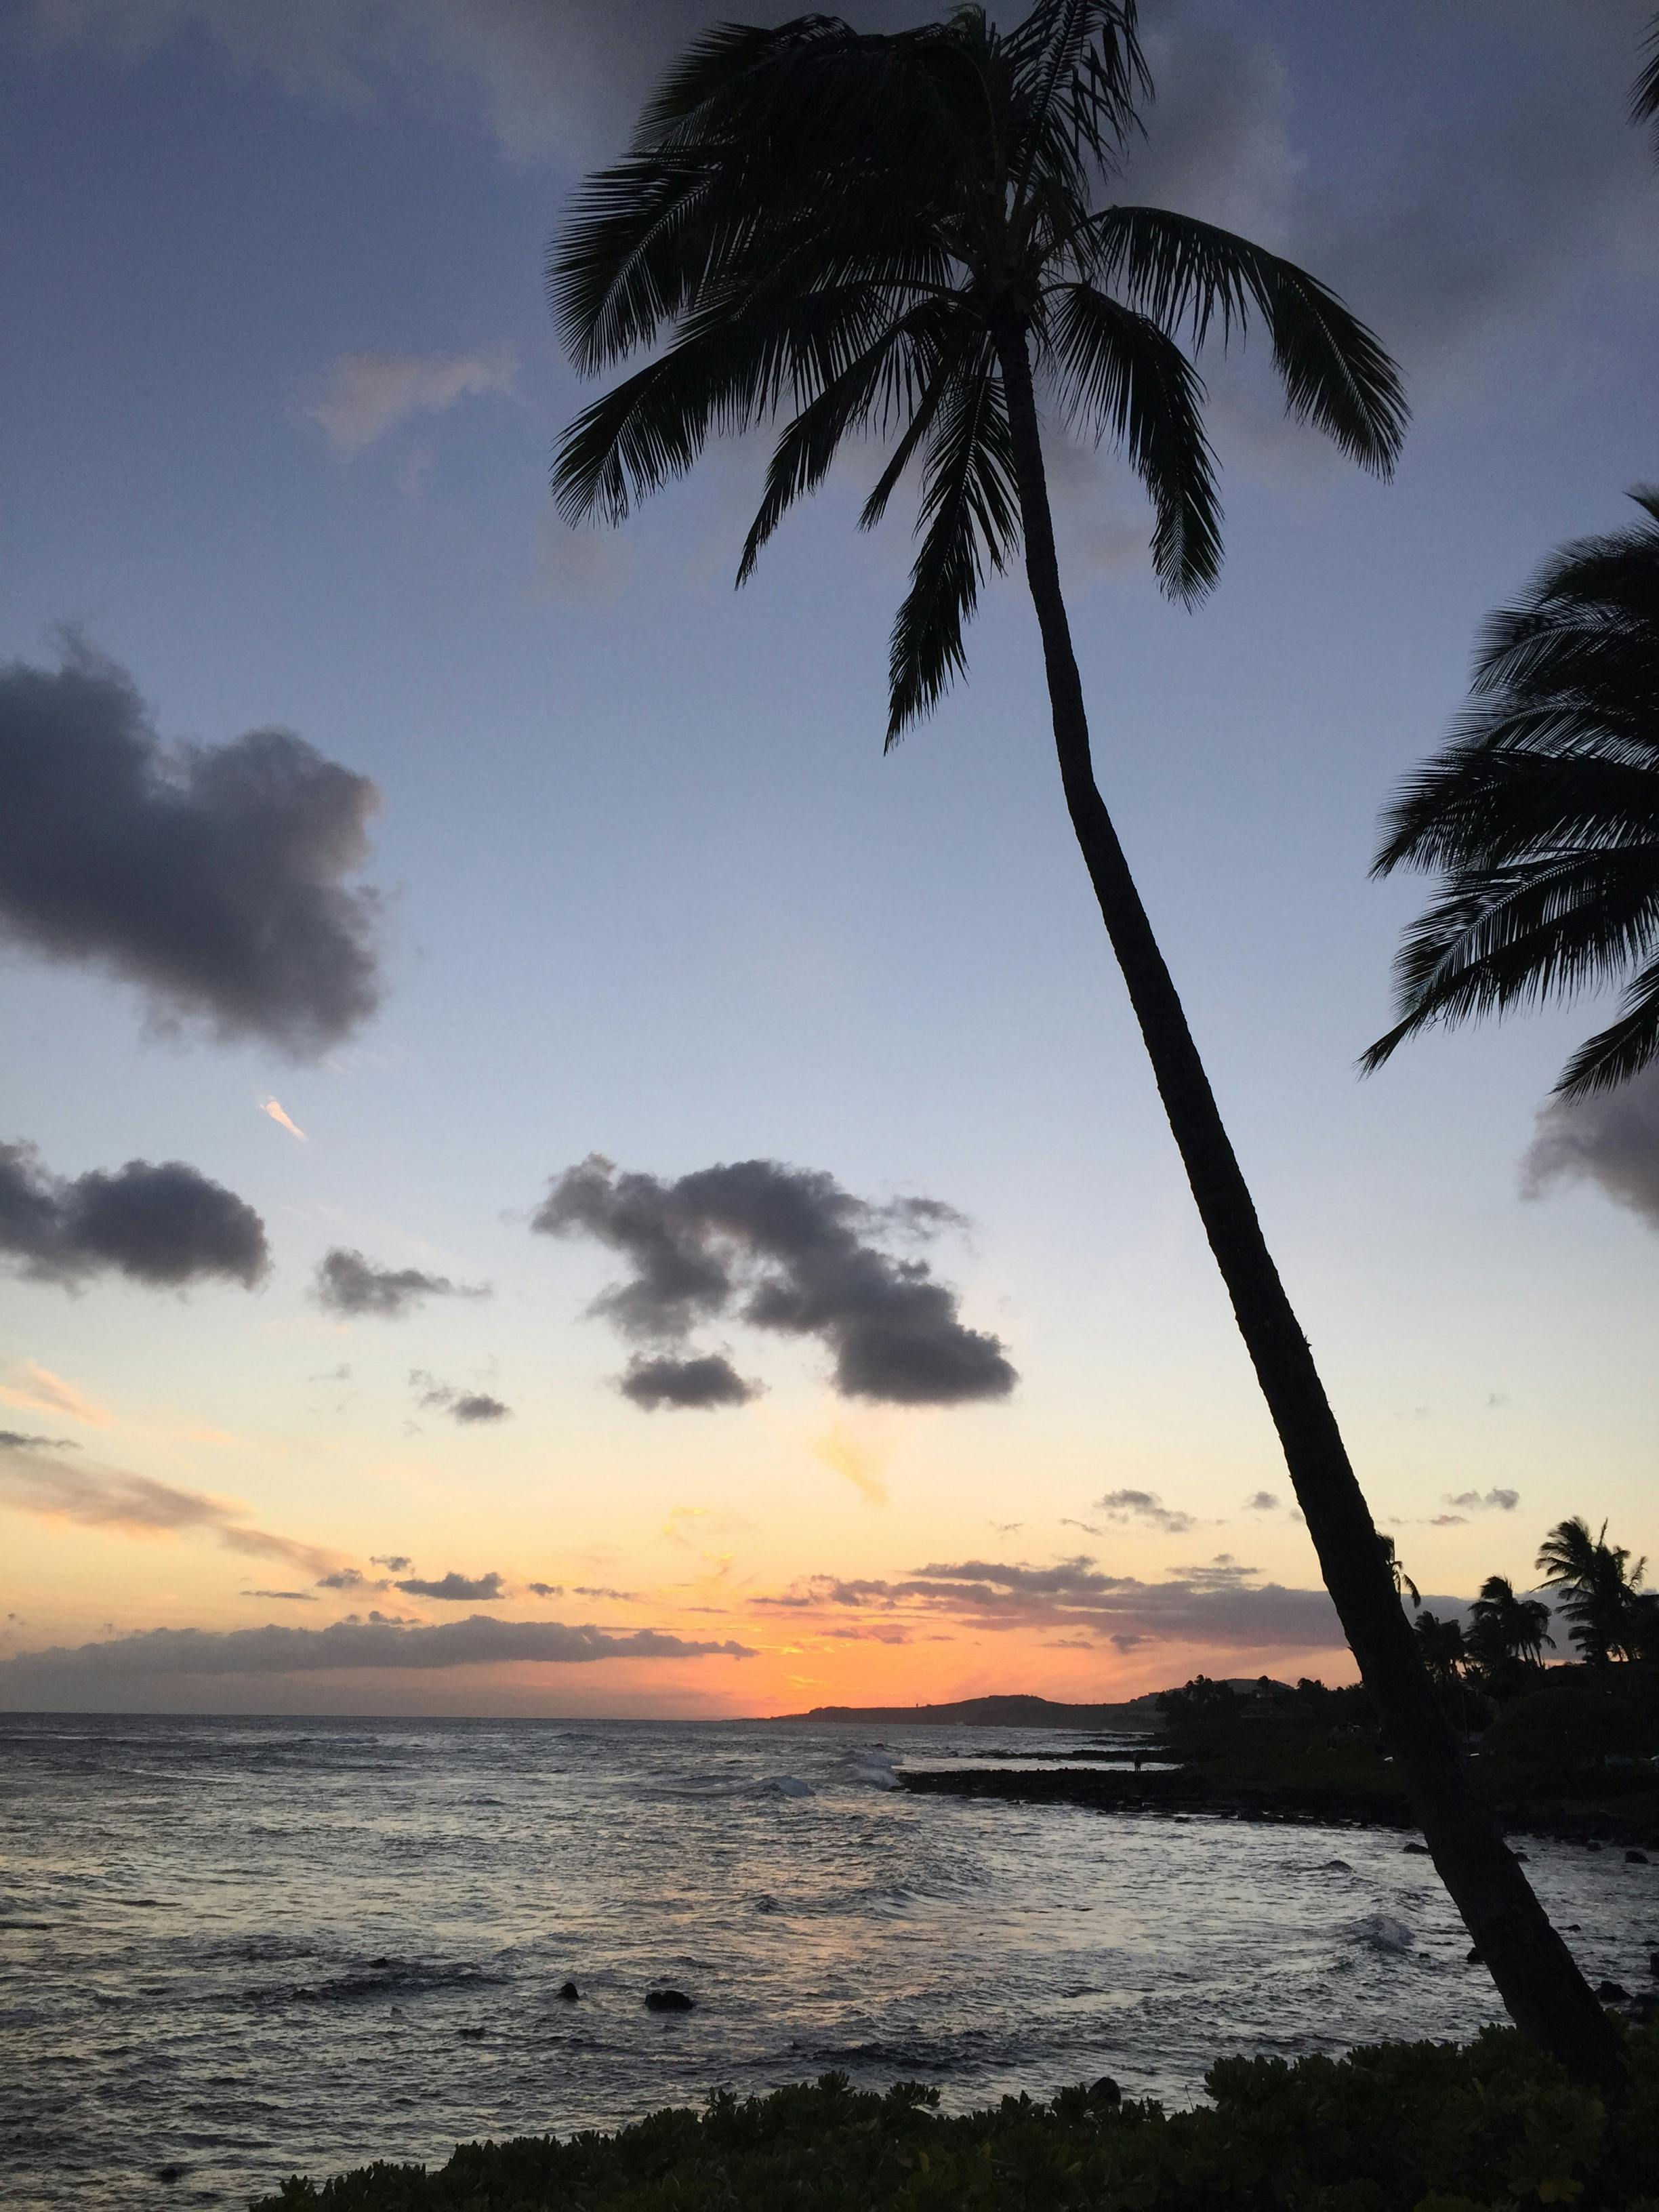 1 360 以上の無料ハワイ画像